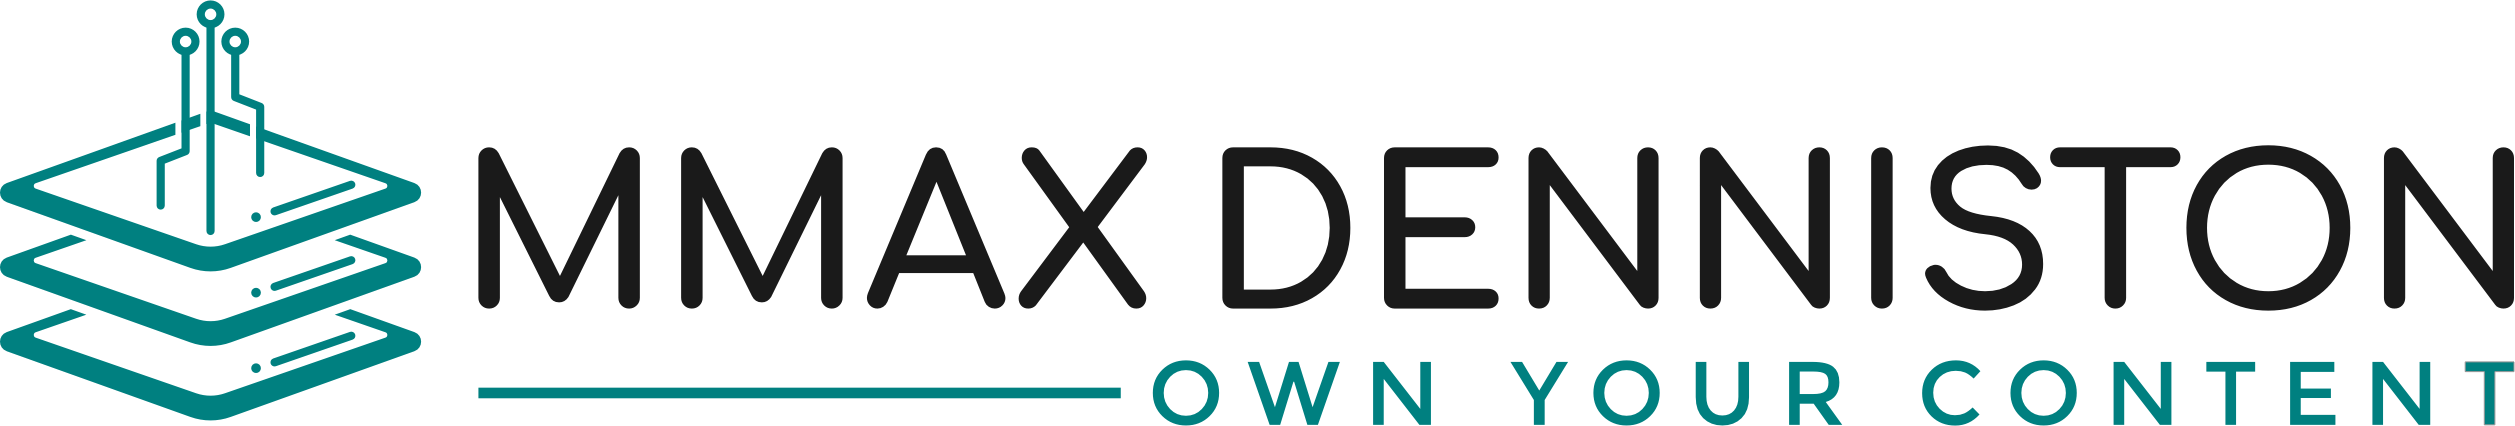 MMAX DENNISTON logo